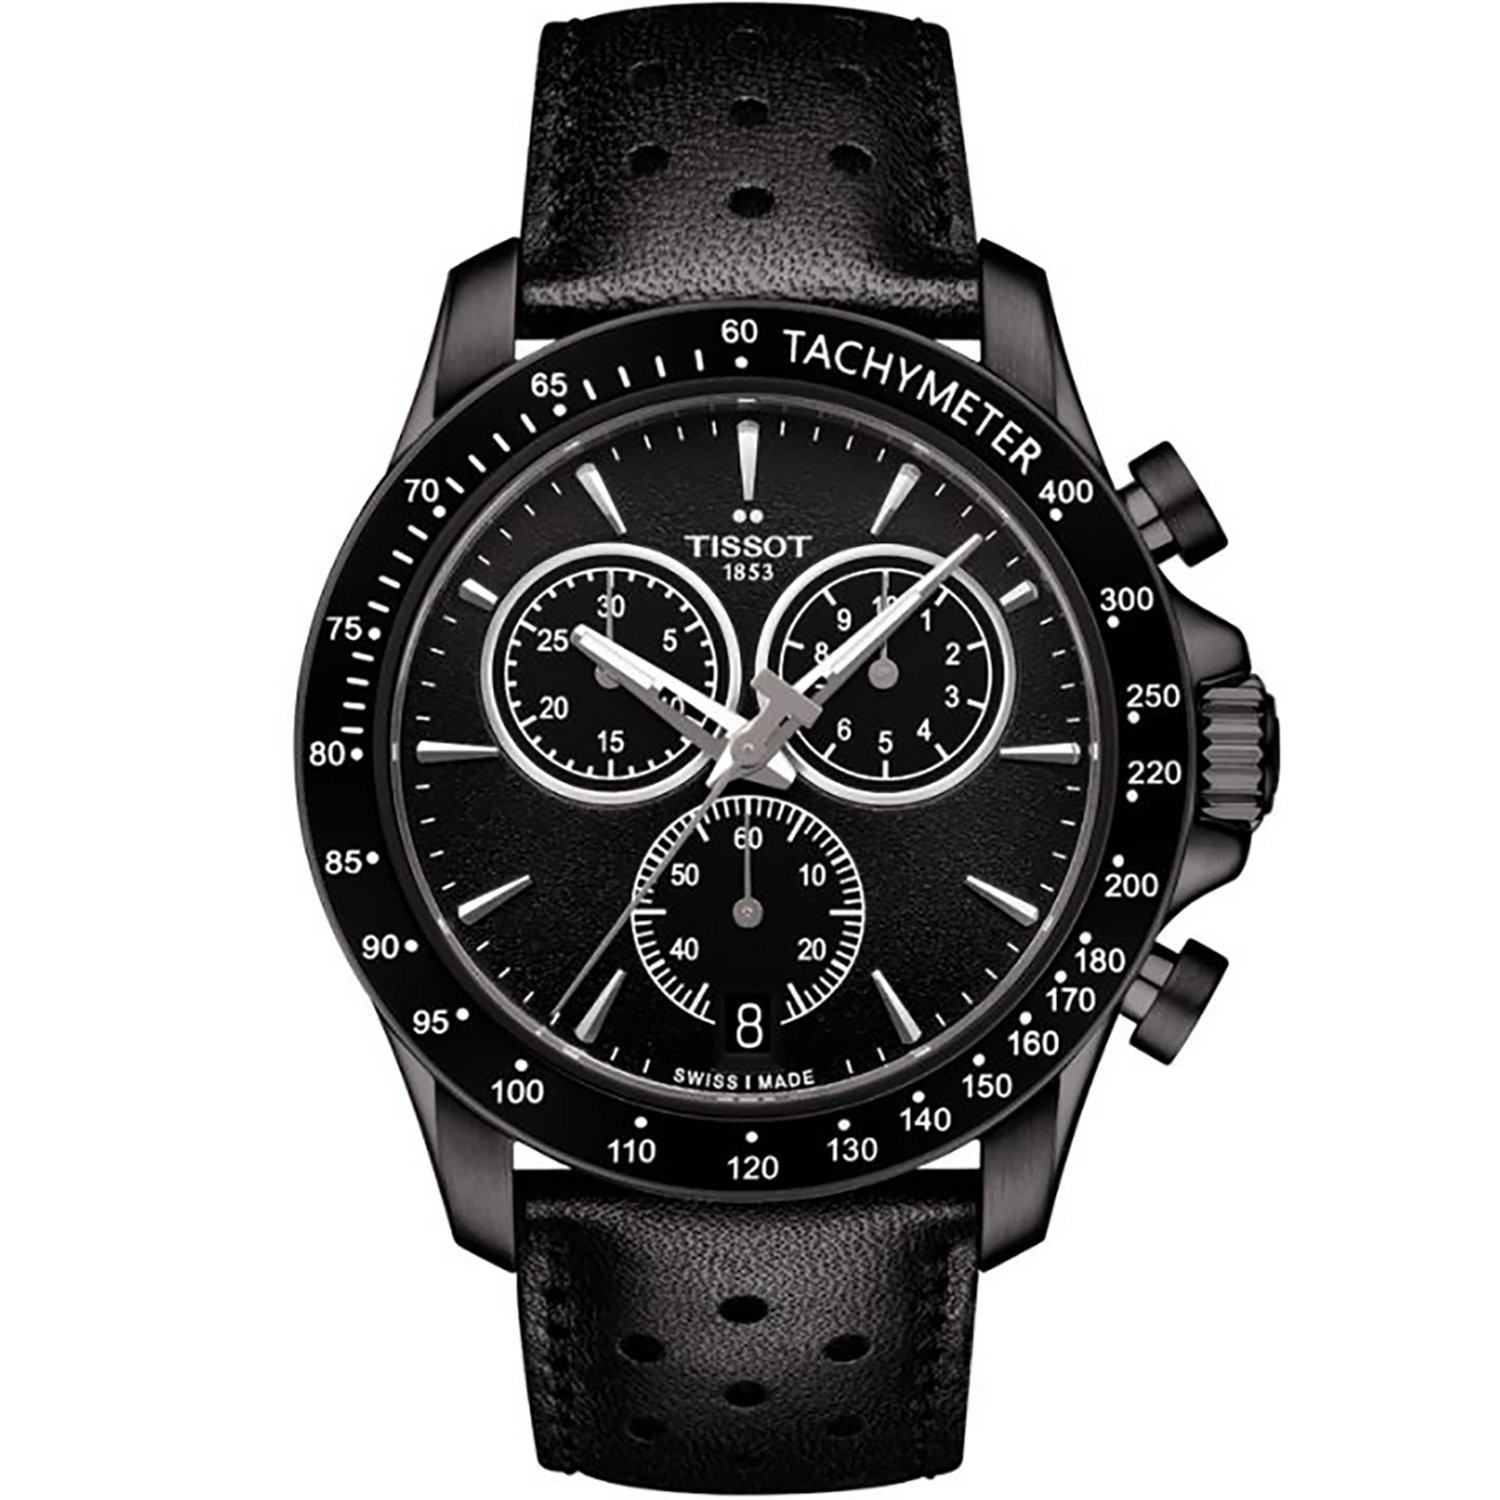 Montre Tissot V8 chronographe noire